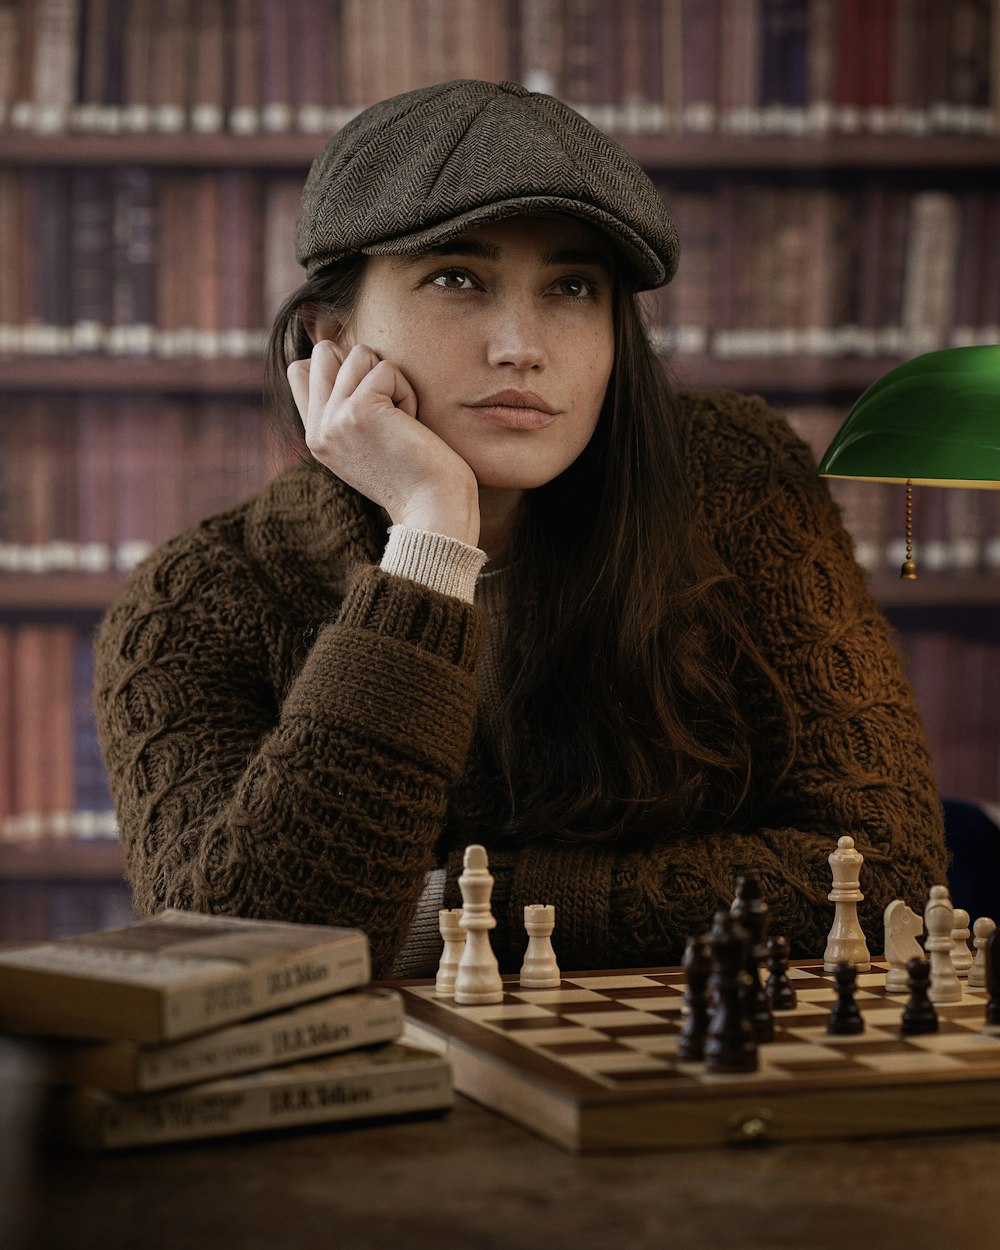 체스 보드가있는 테이블에 앉아있는 여자